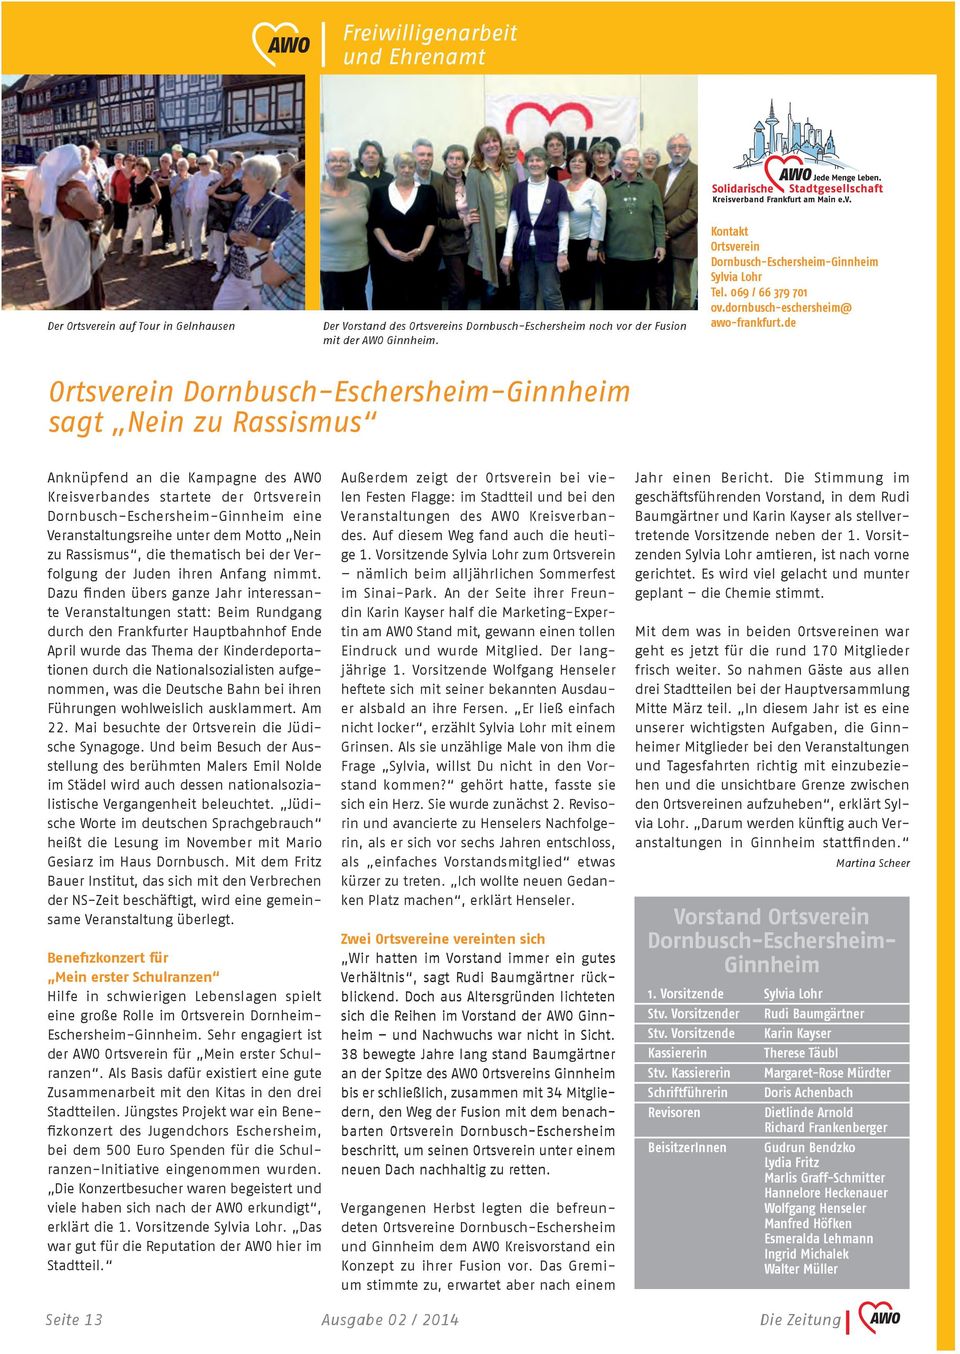 de Ortsverein Dornbusch-Eschersheim-Ginnheim sagt Nein zu Rassismus Anknüpfend an die Kampagne des AWO Kreisverbandes startete der Ortsverein Dornbusch-Eschersheim-Ginnheim eine Veranstaltungsreihe